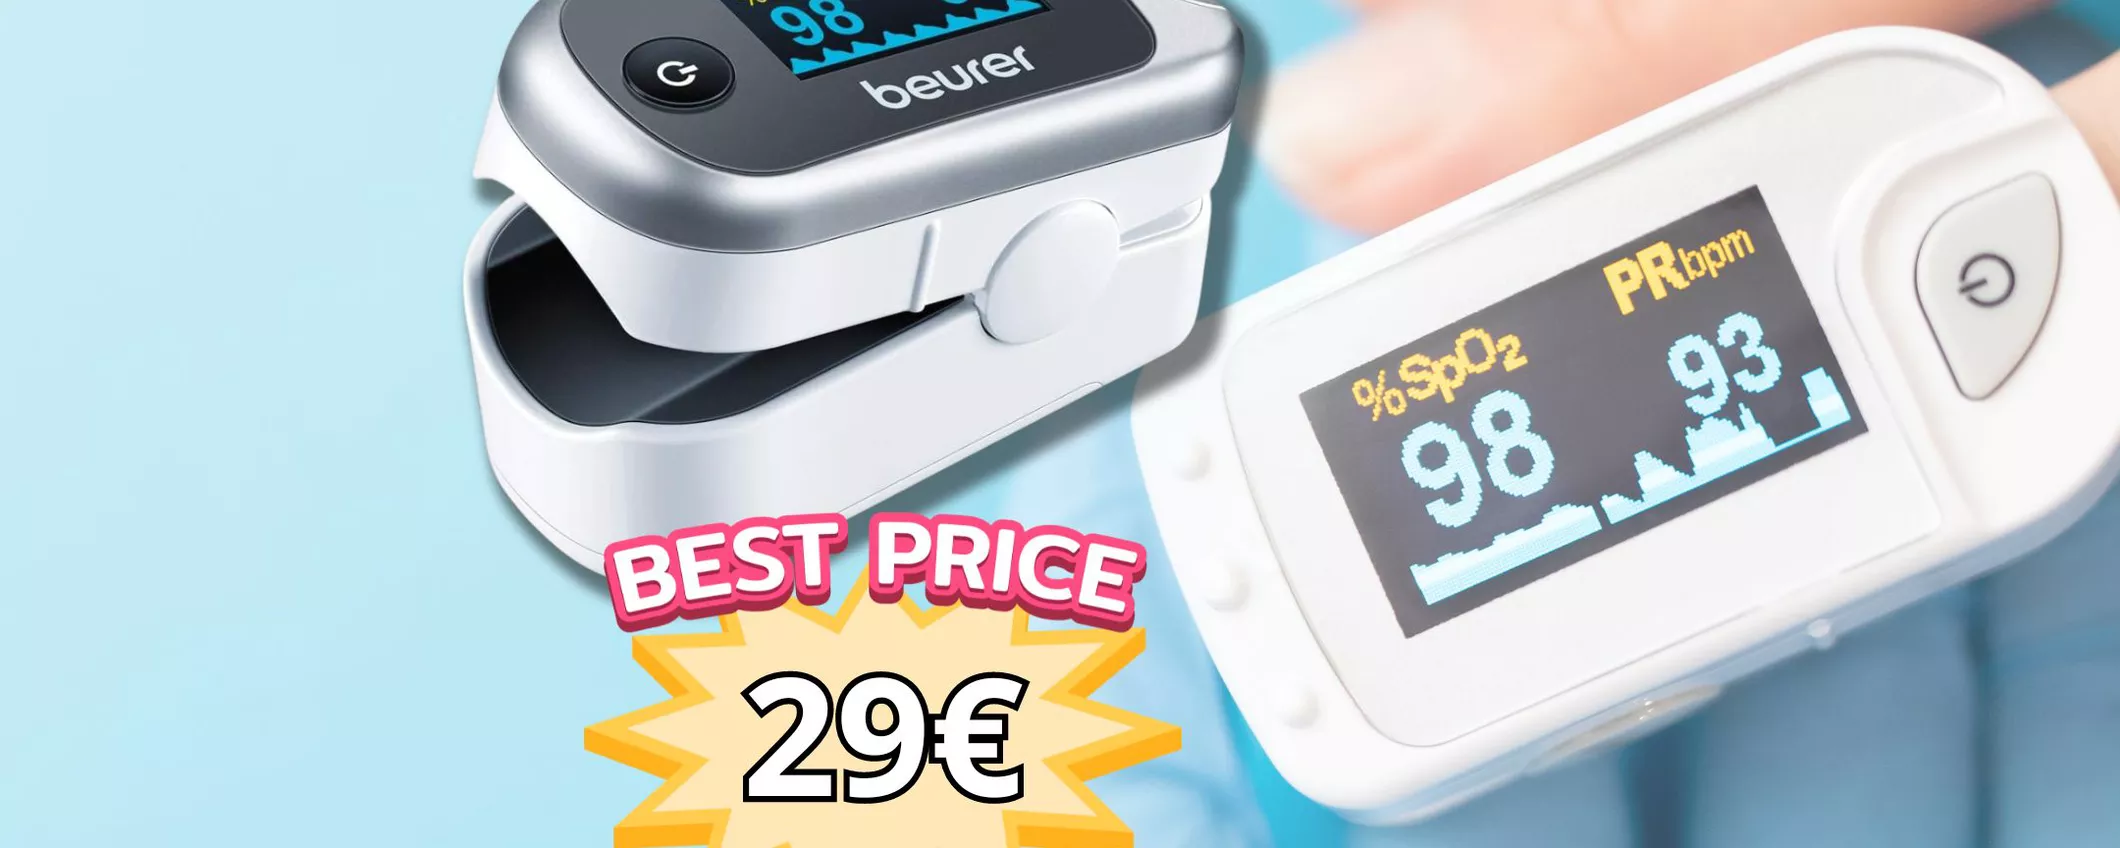 Saturimetro per monitorare la tua salute a prezzo speciale: scoprilo a 29€ su Amazon!